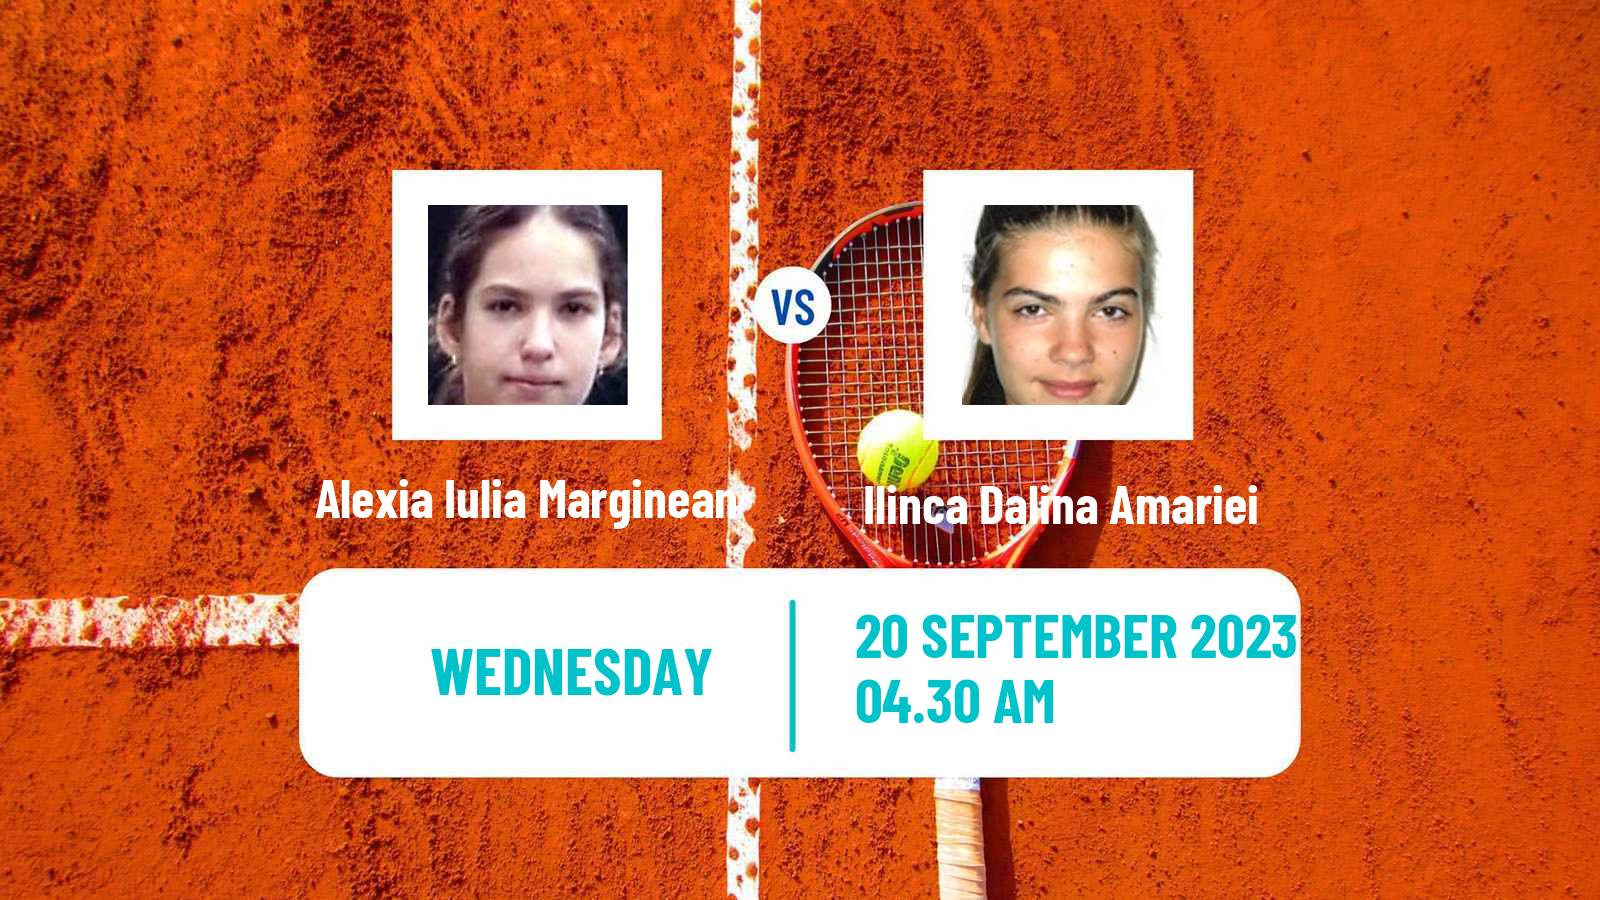 Tennis ITF W25 Slobozia Women Alexia Iulia Marginean - Ilinca Dalina Amariei